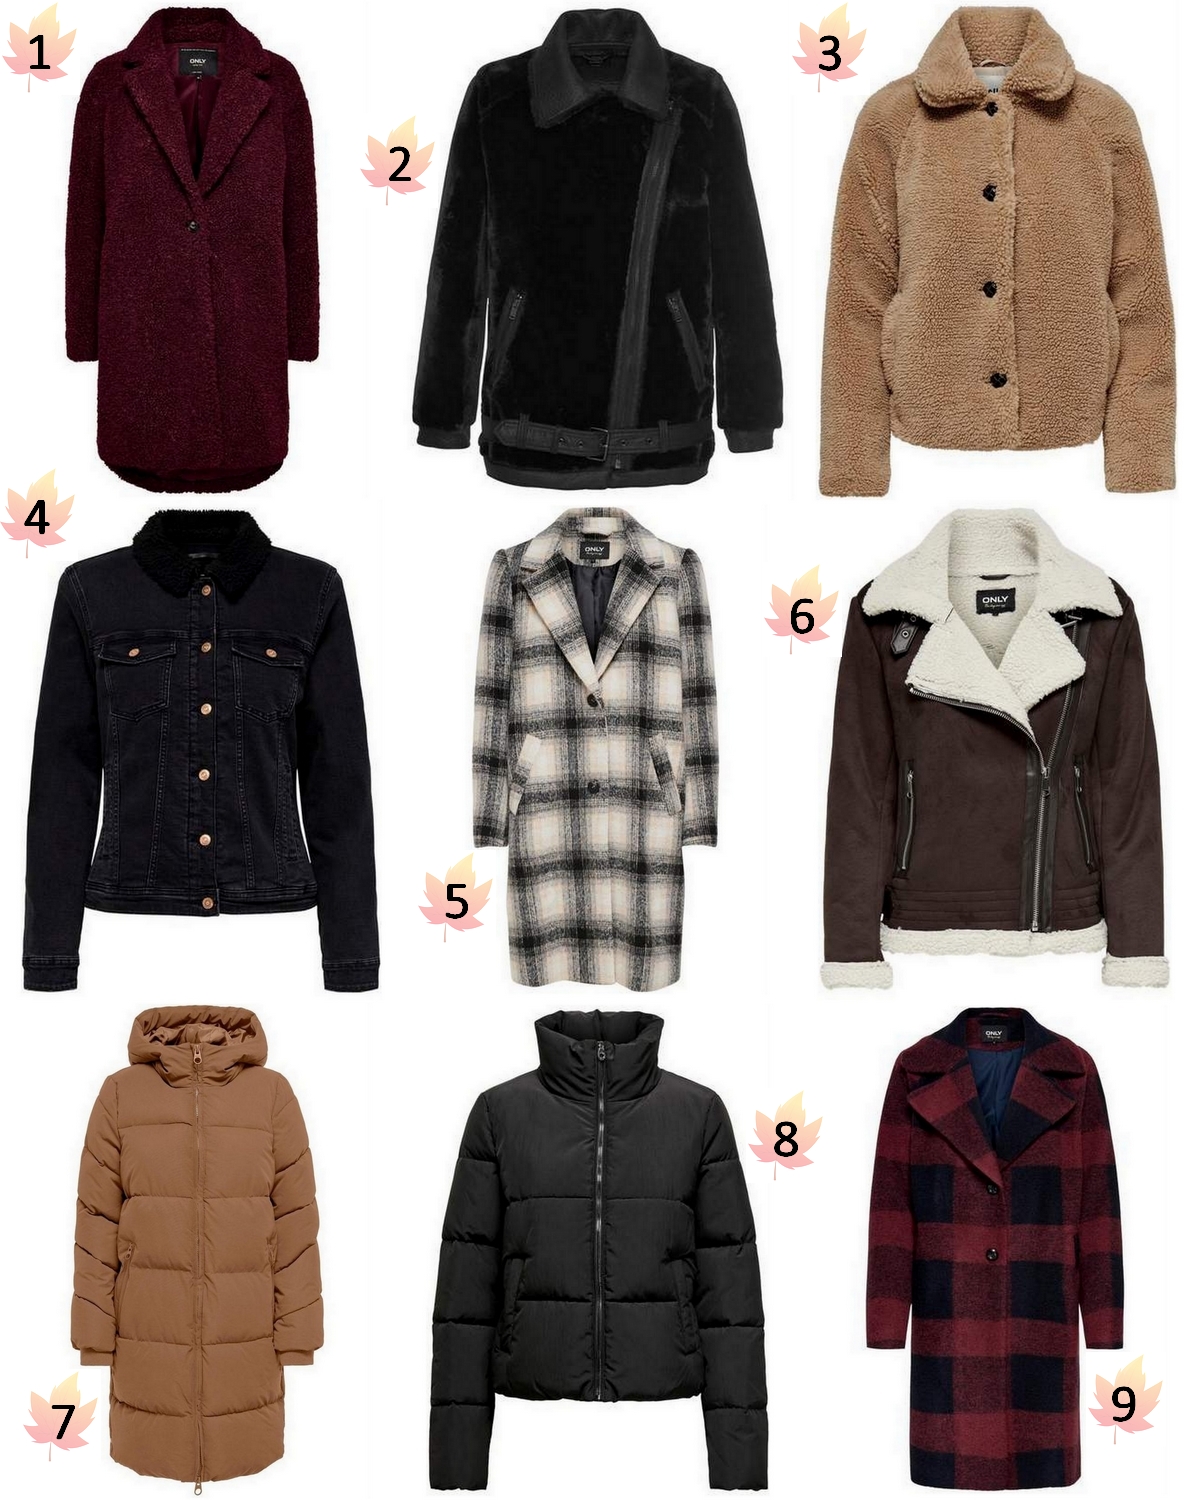 beddengoed maat diep Shop tip | 9x mooie jassen voor de herfst en winter - Make People Stare